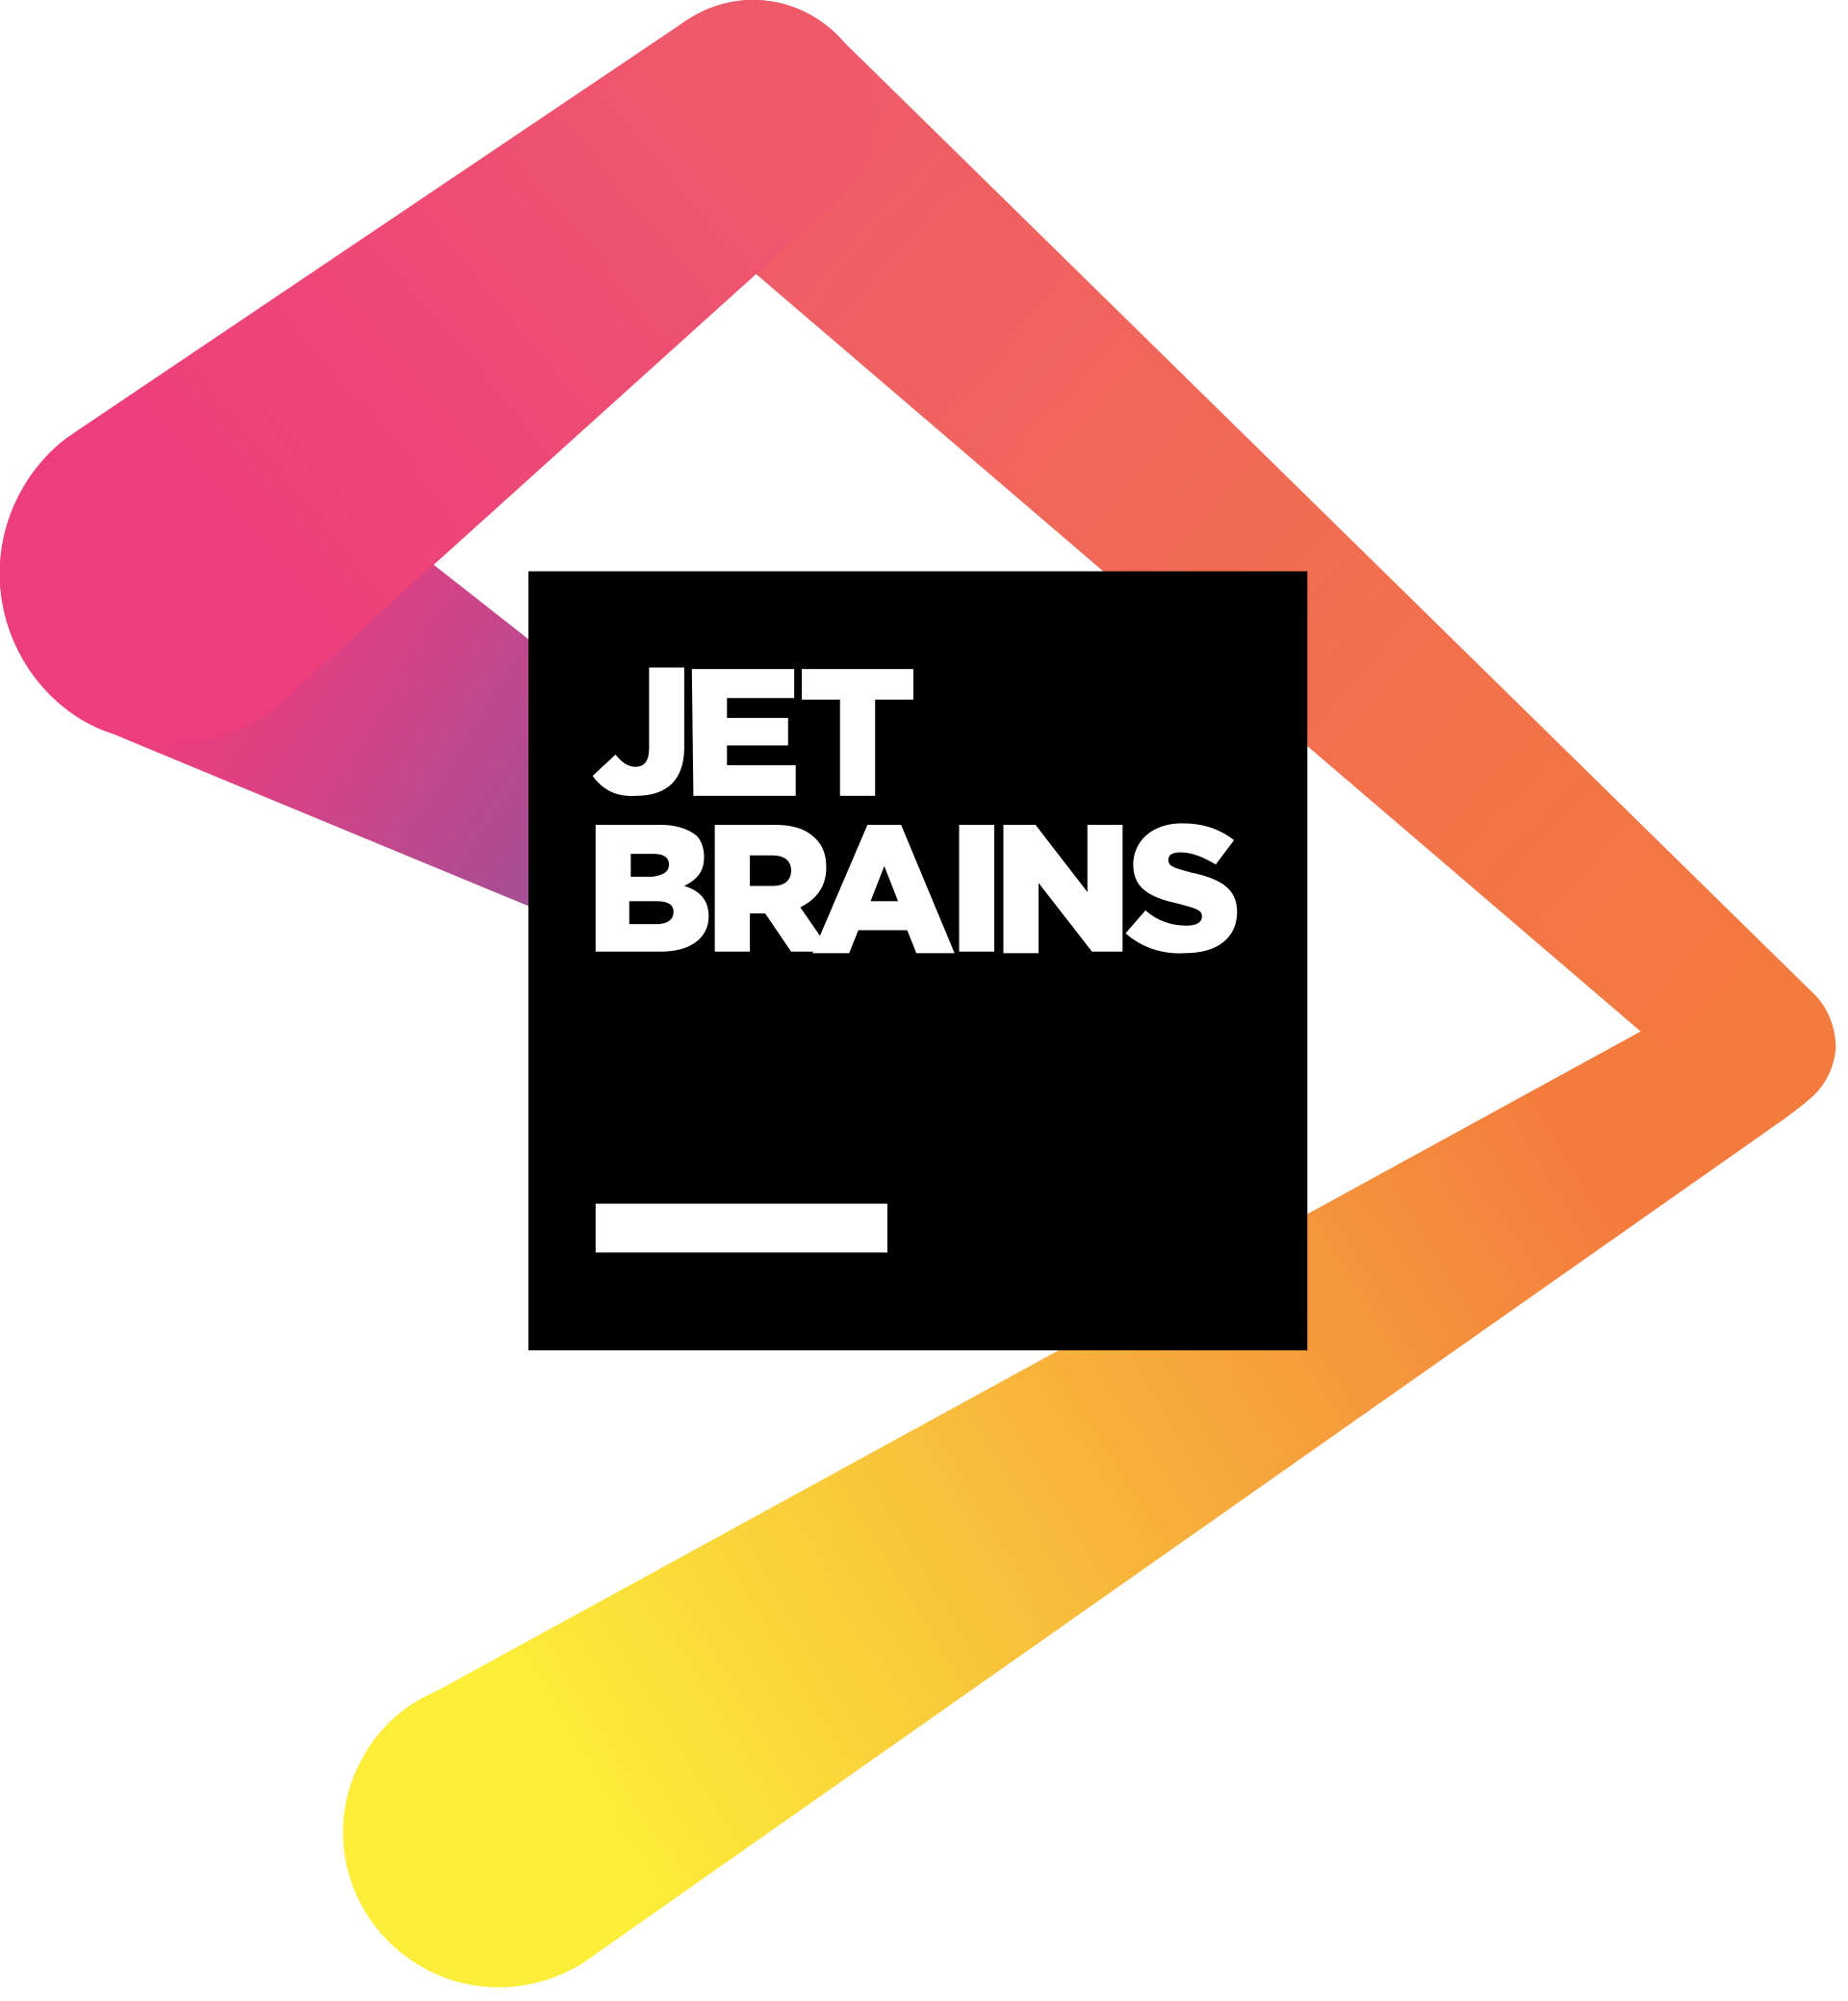 jetbrains free tools